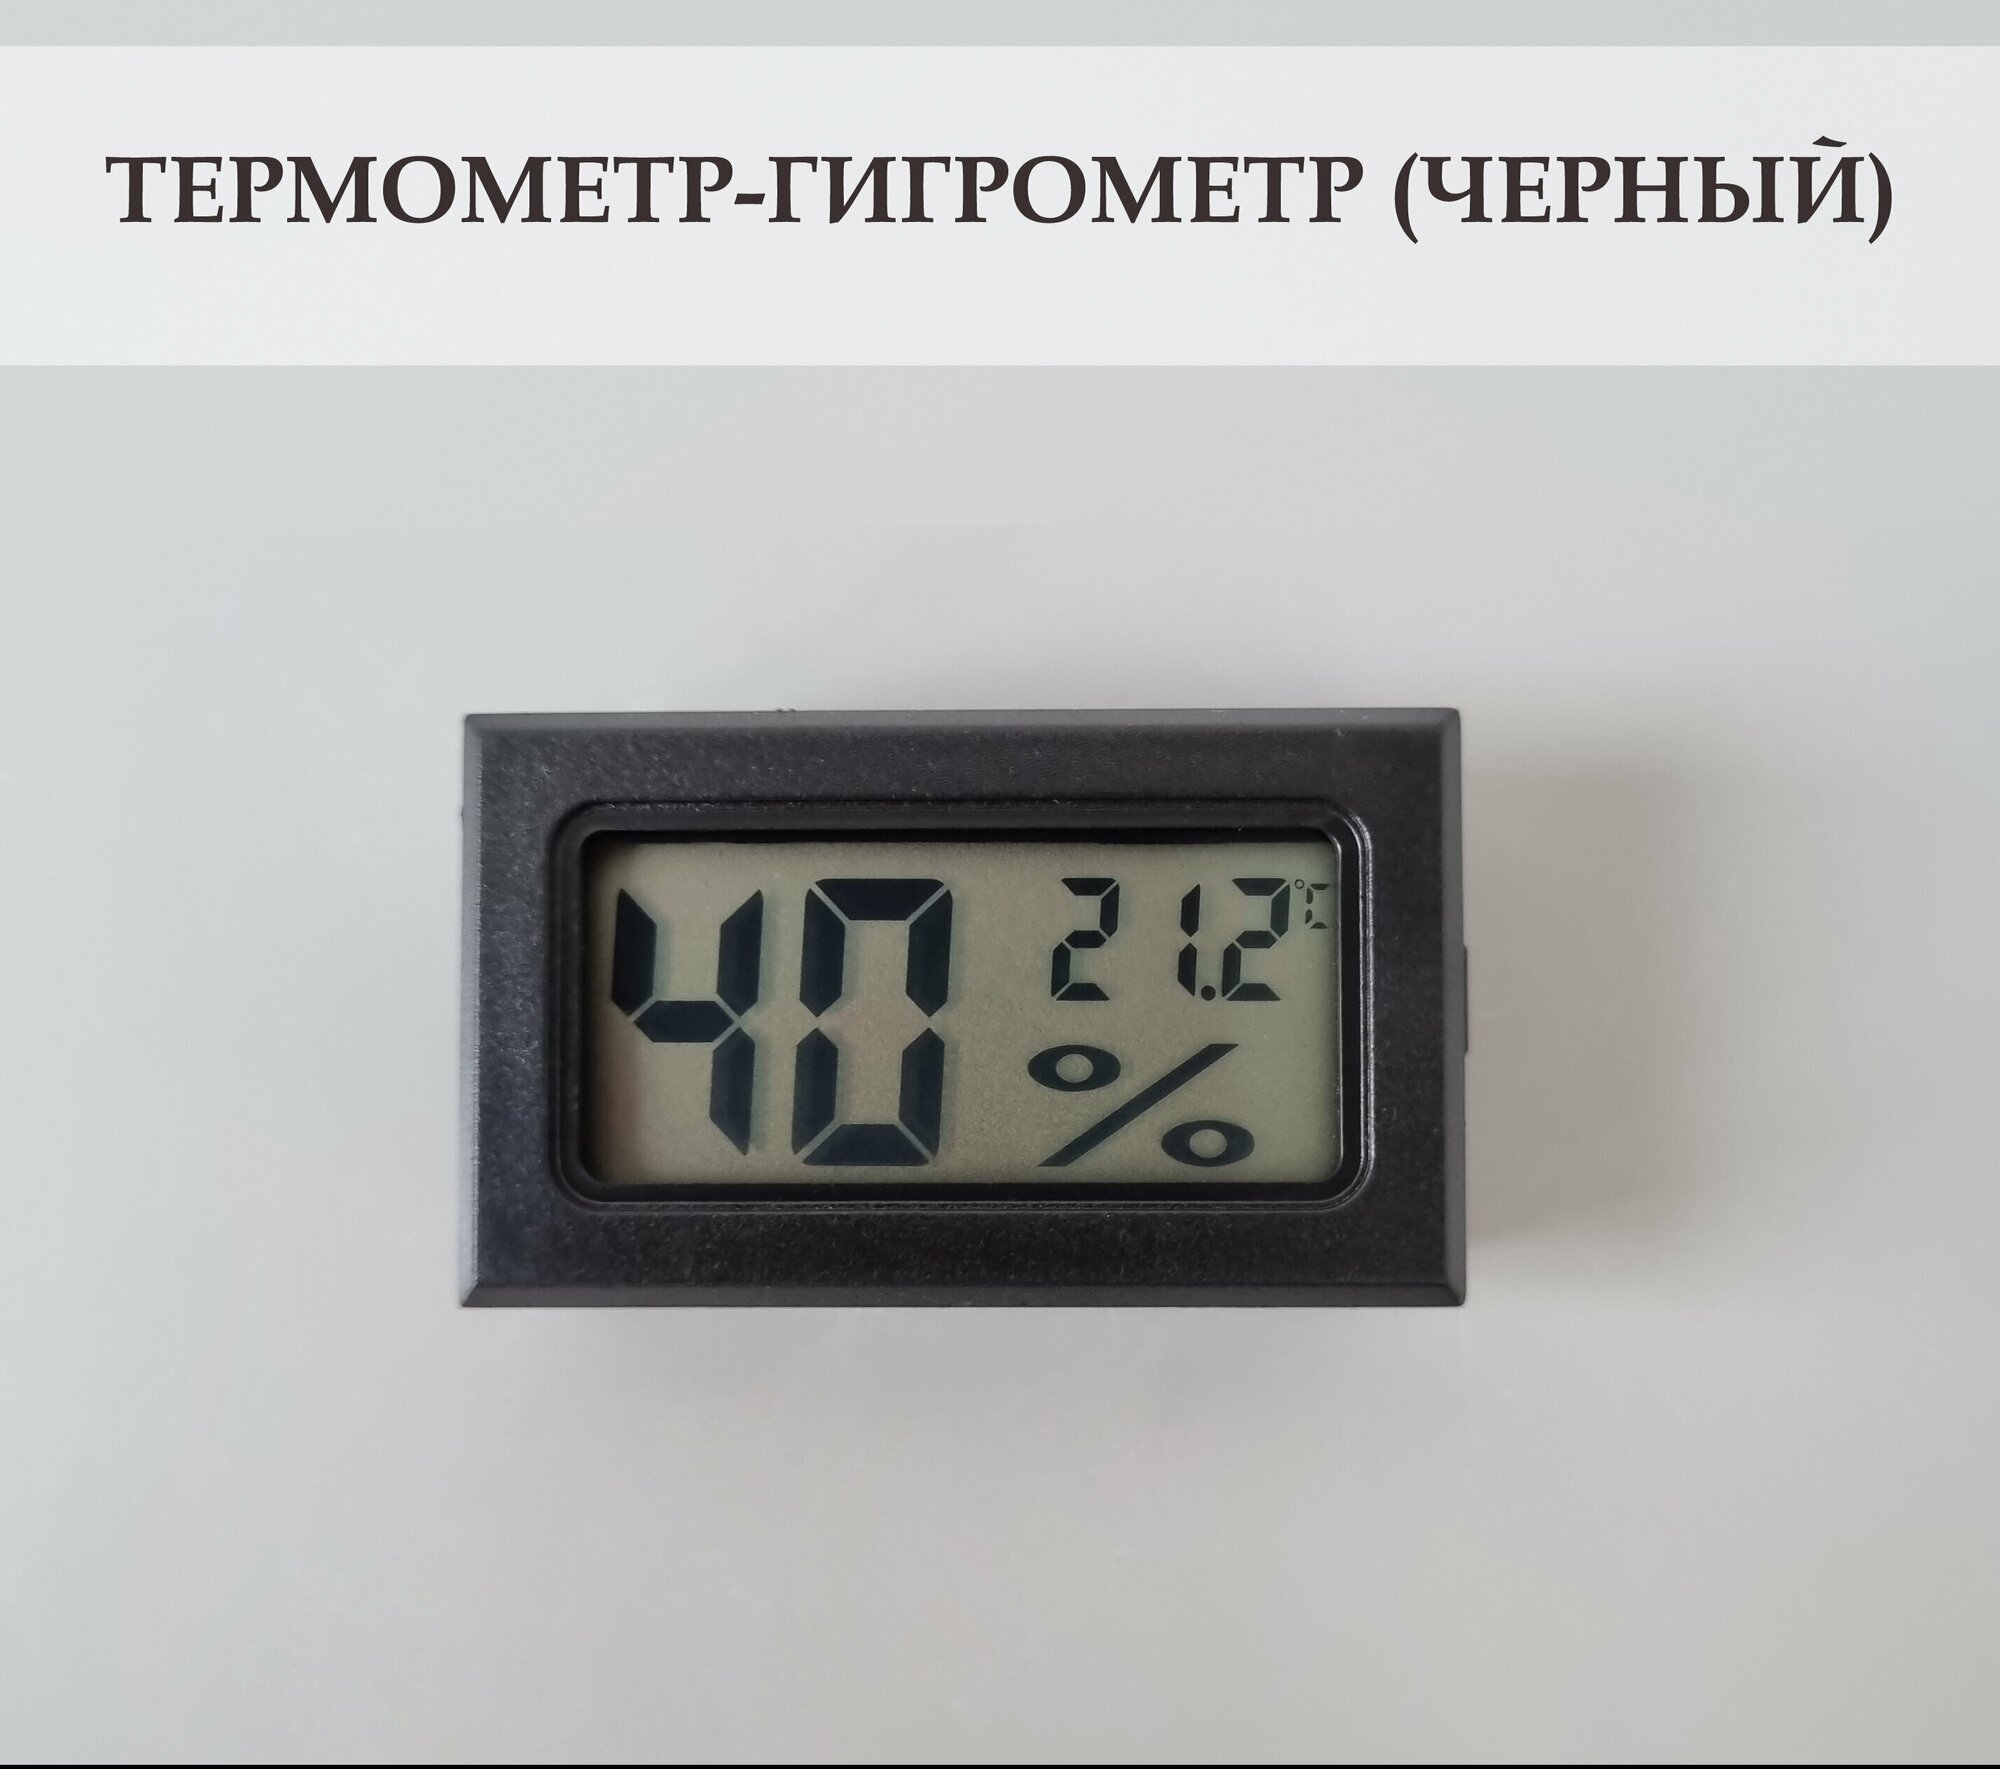 Термометр-гигрометр цифровой для дома, дачи, теплицы, террариума